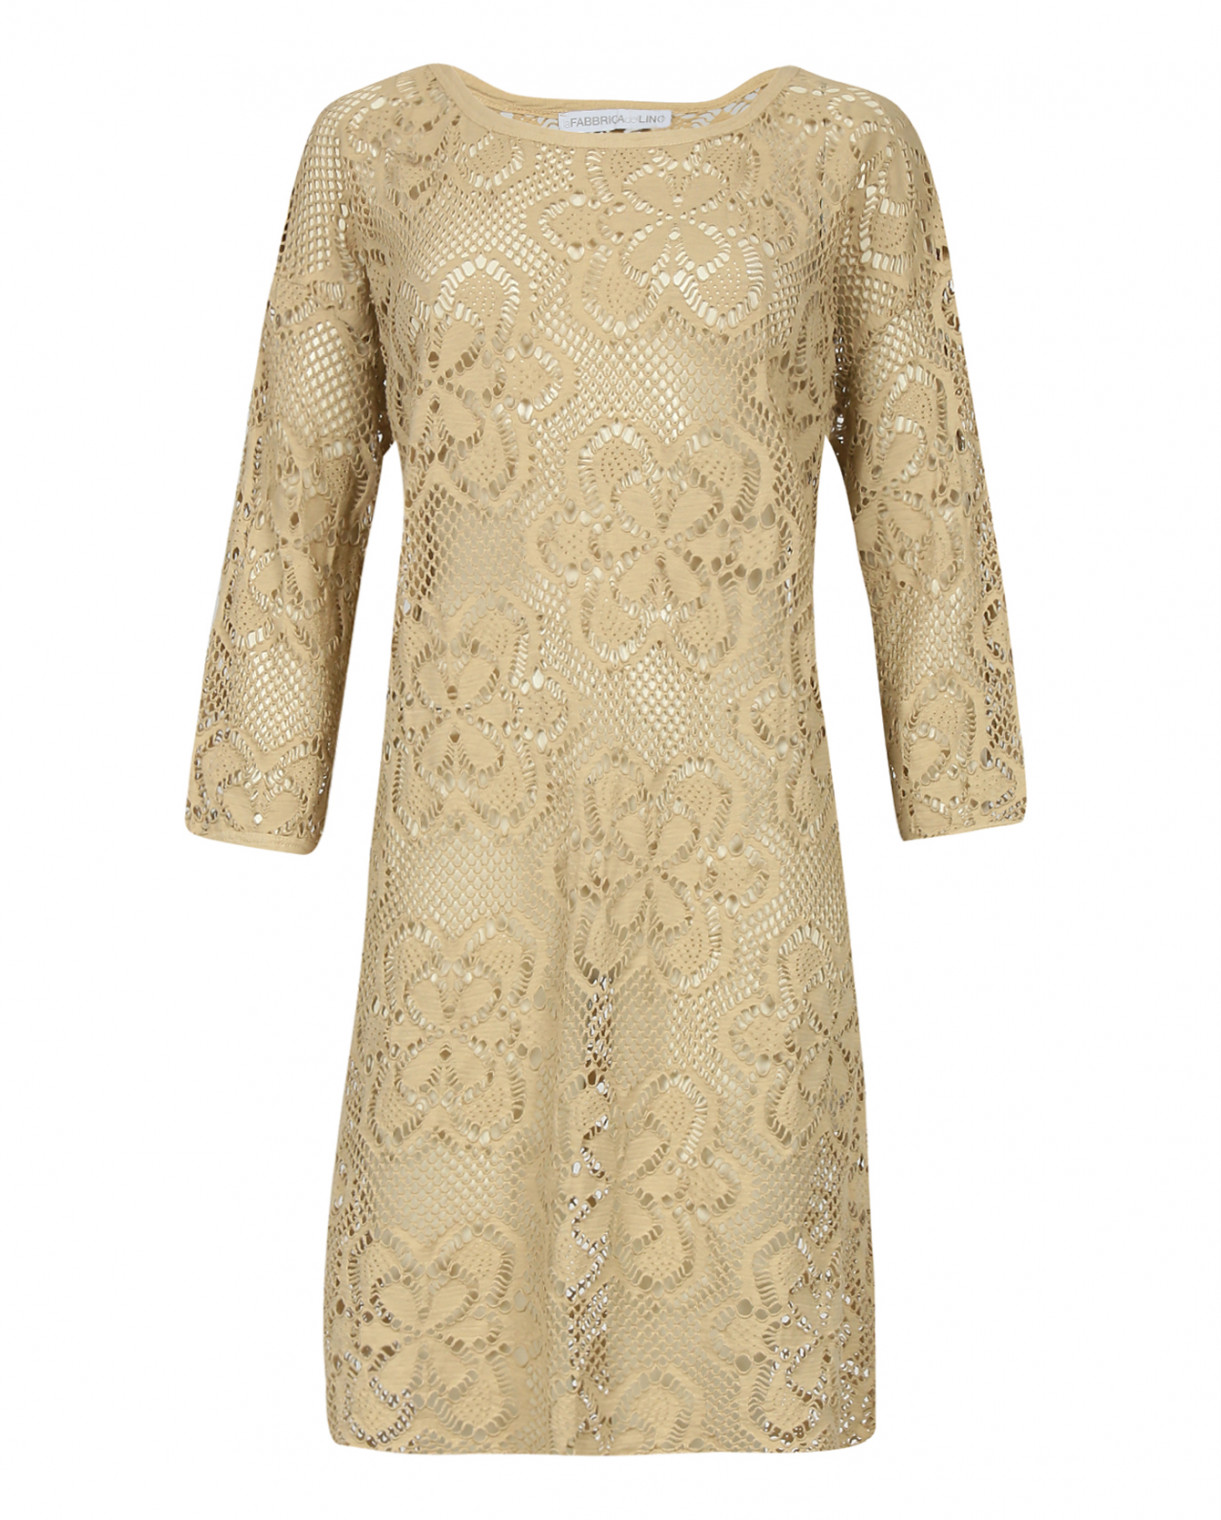 Платье из хлопка с перфорацией La fabrica del lino  –  Общий вид  – Цвет:  Бежевый